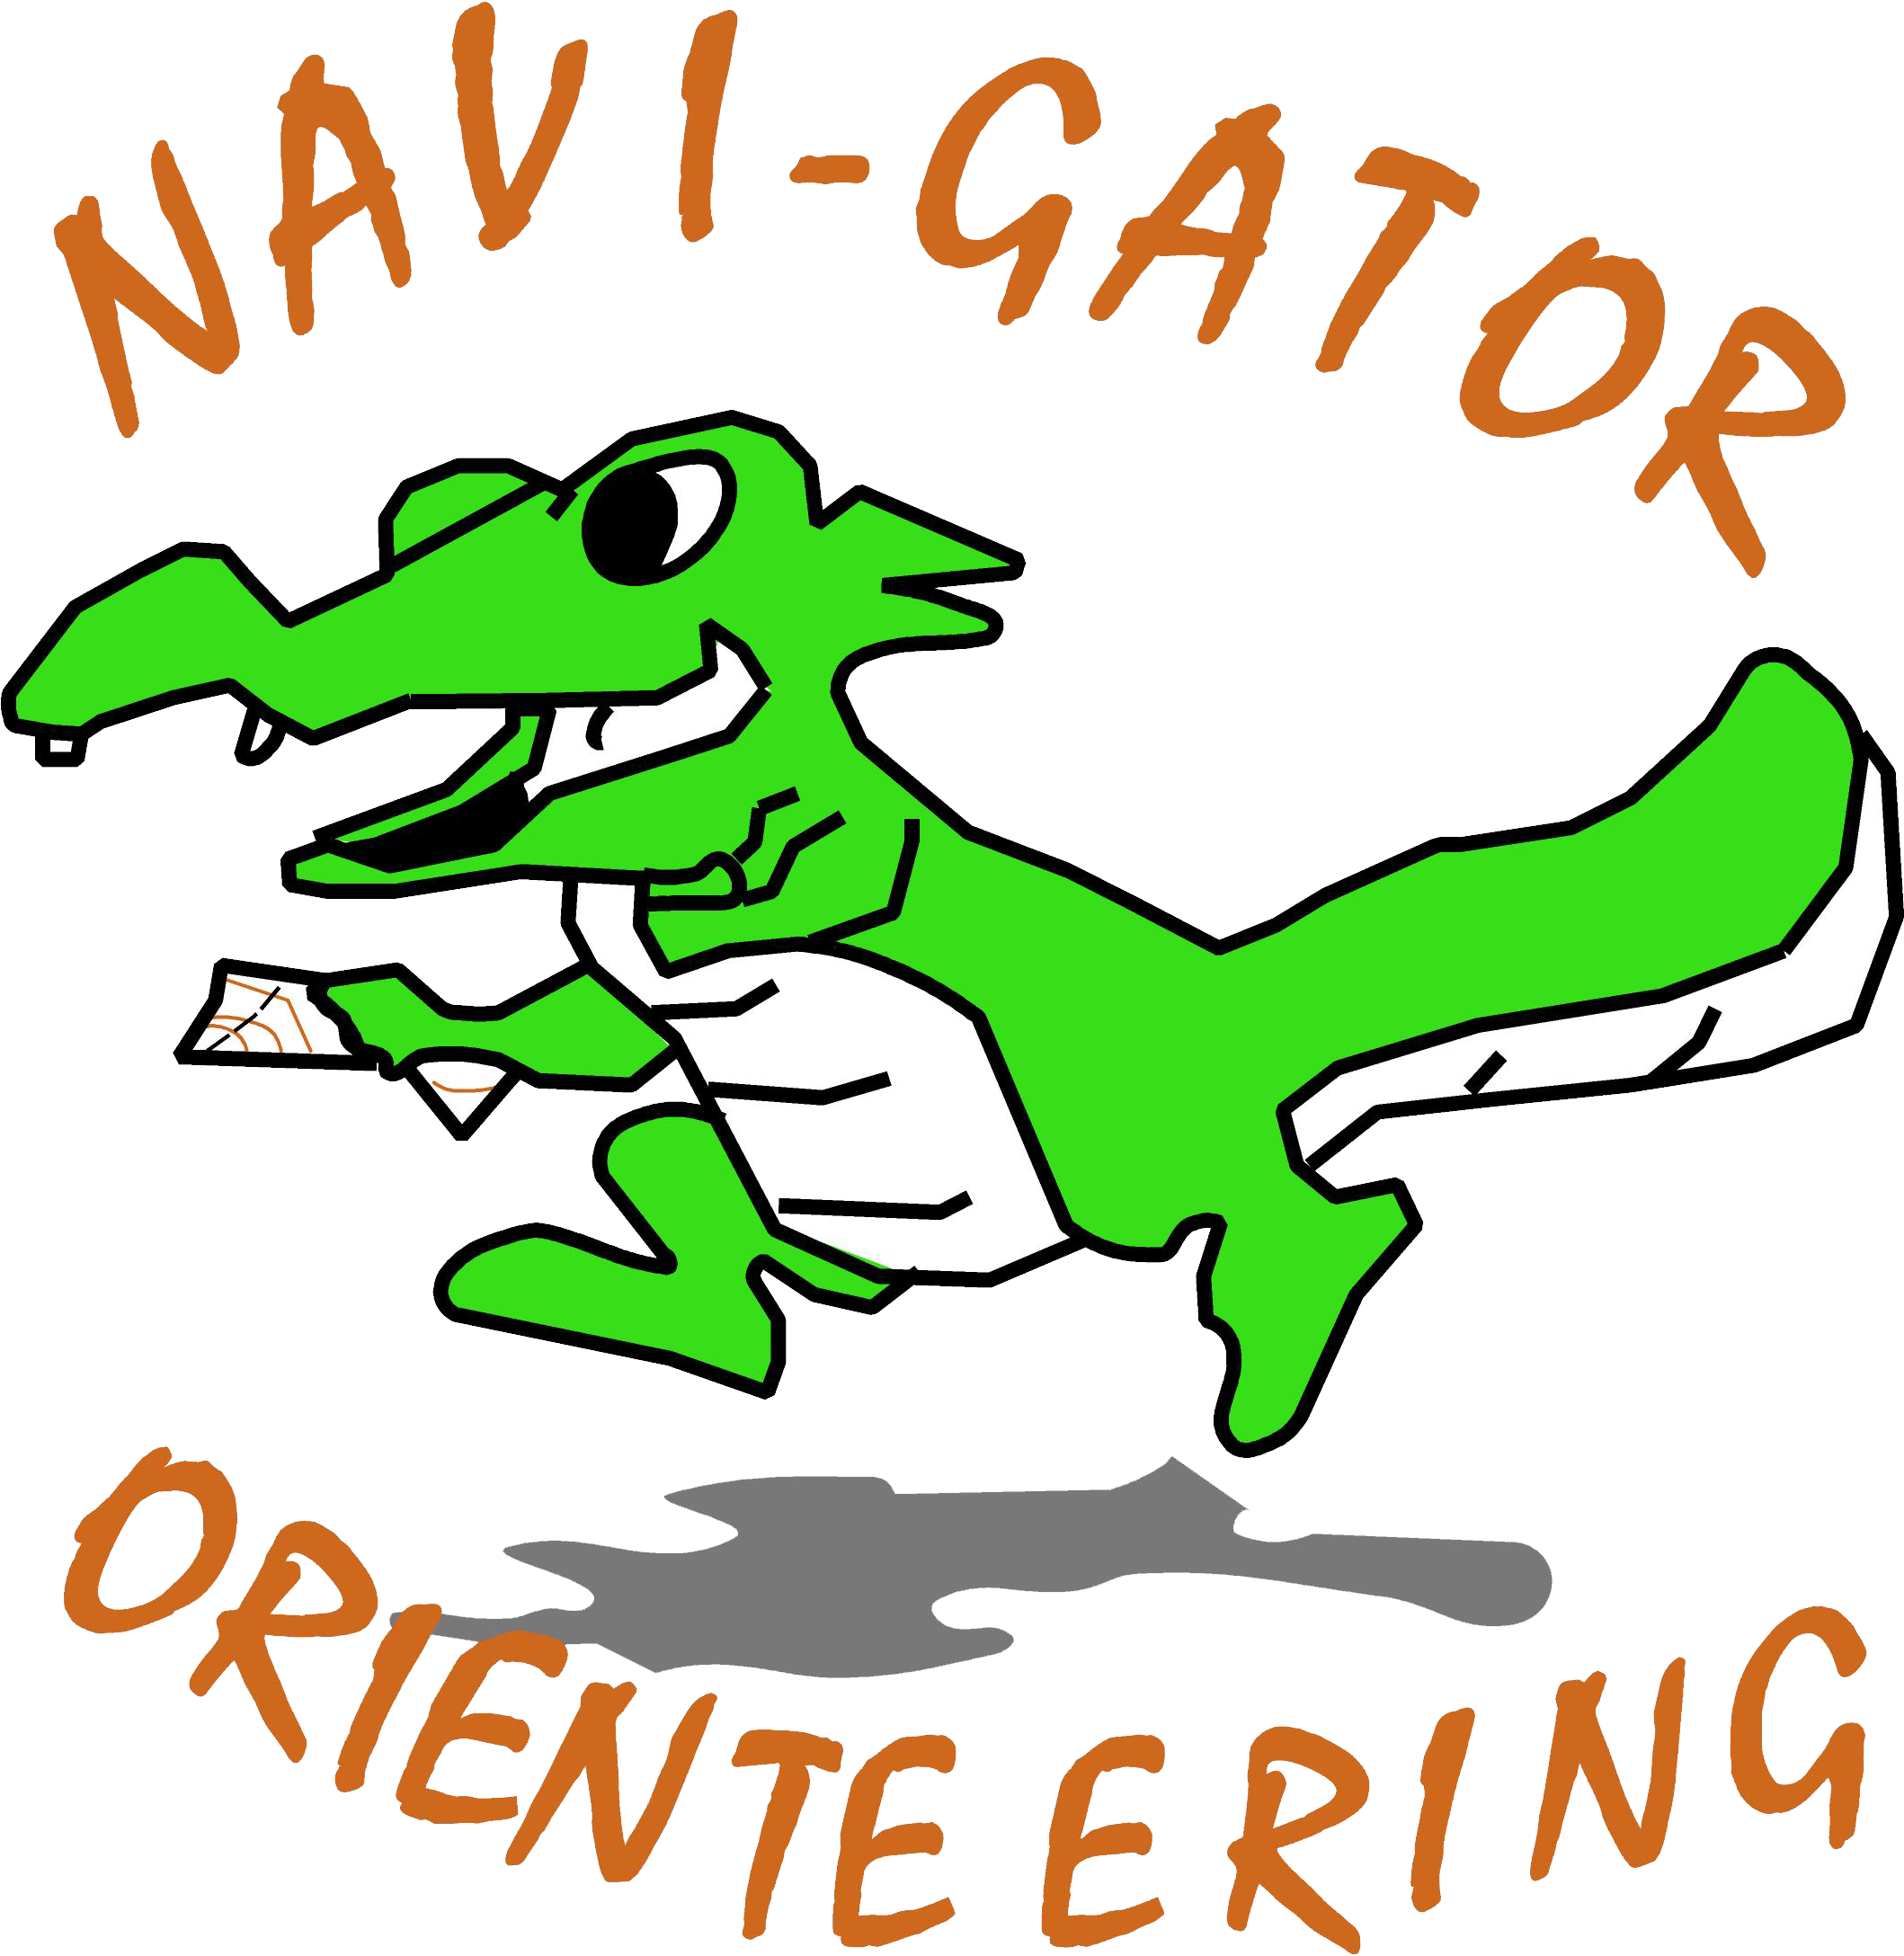 Navi Gator Long Distance Orienteering Florida Xtreme - Navi Gator Long Distance Orienteering Florida Xtreme (2255x2465)